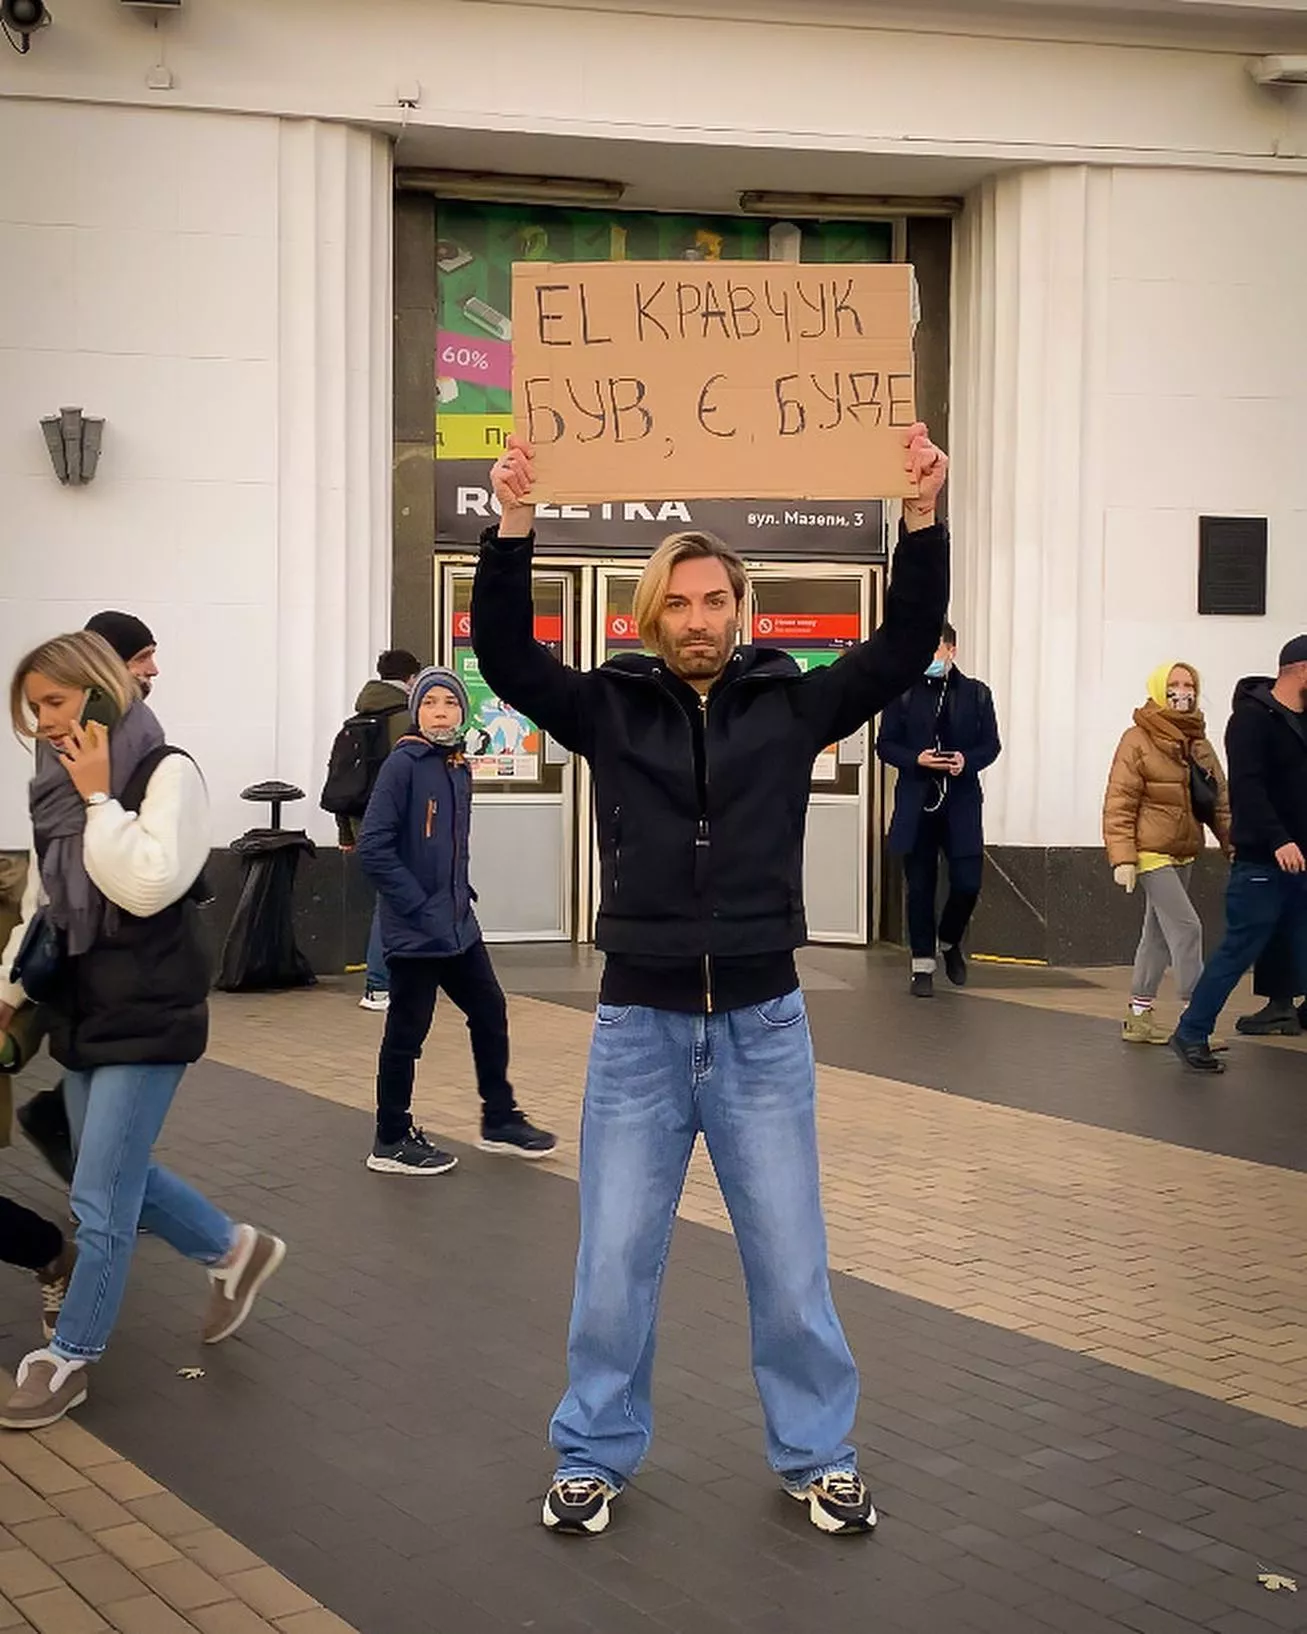 El Кравчук вышел в центр Киева с табличками – артист объяснил, как отреагировали люди